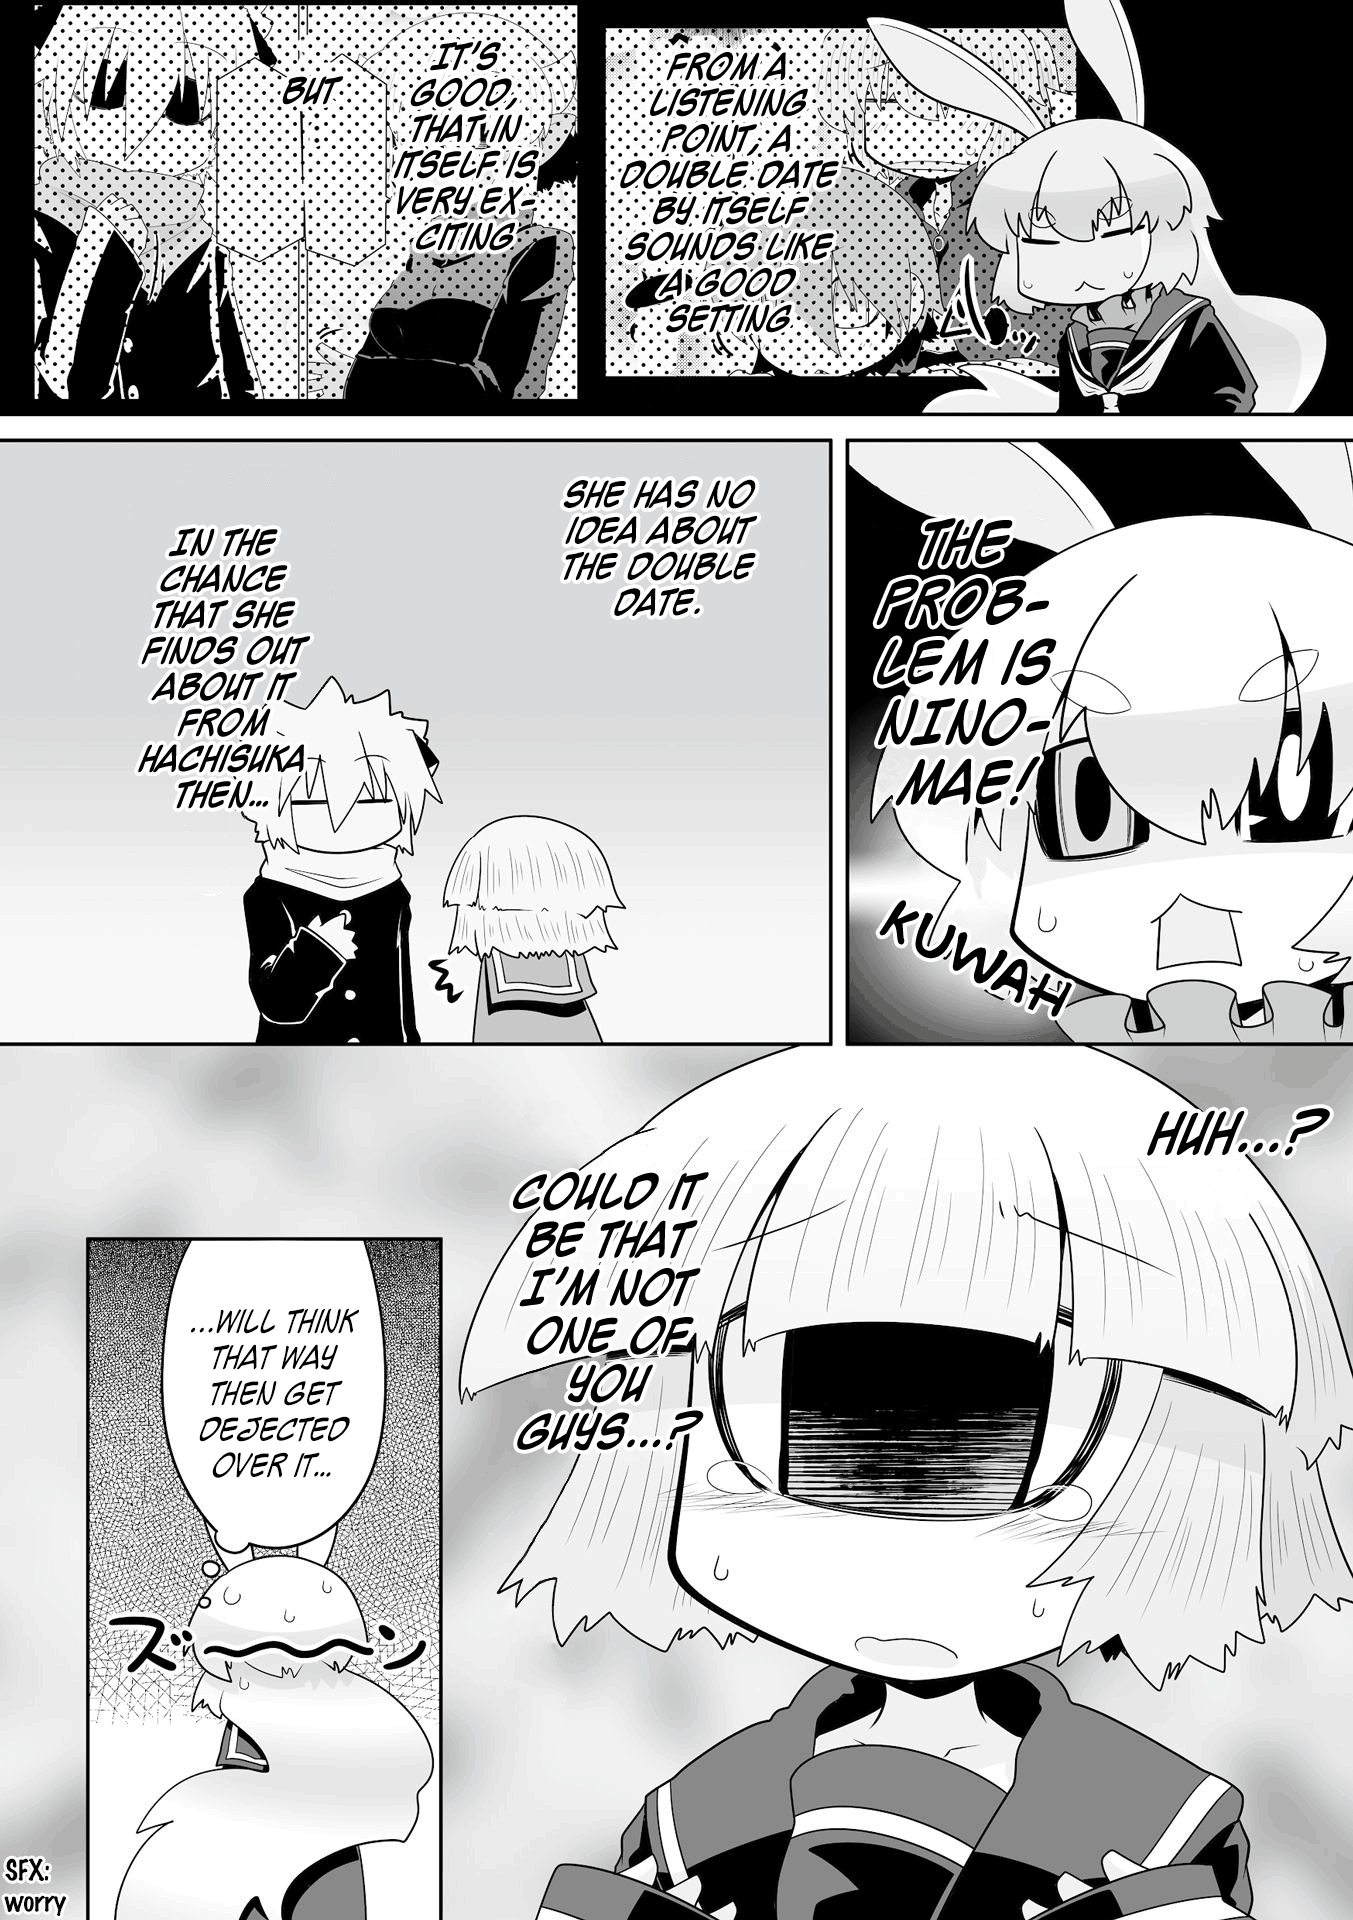 Mako-San To Hachisuka-Kun. - Page 2